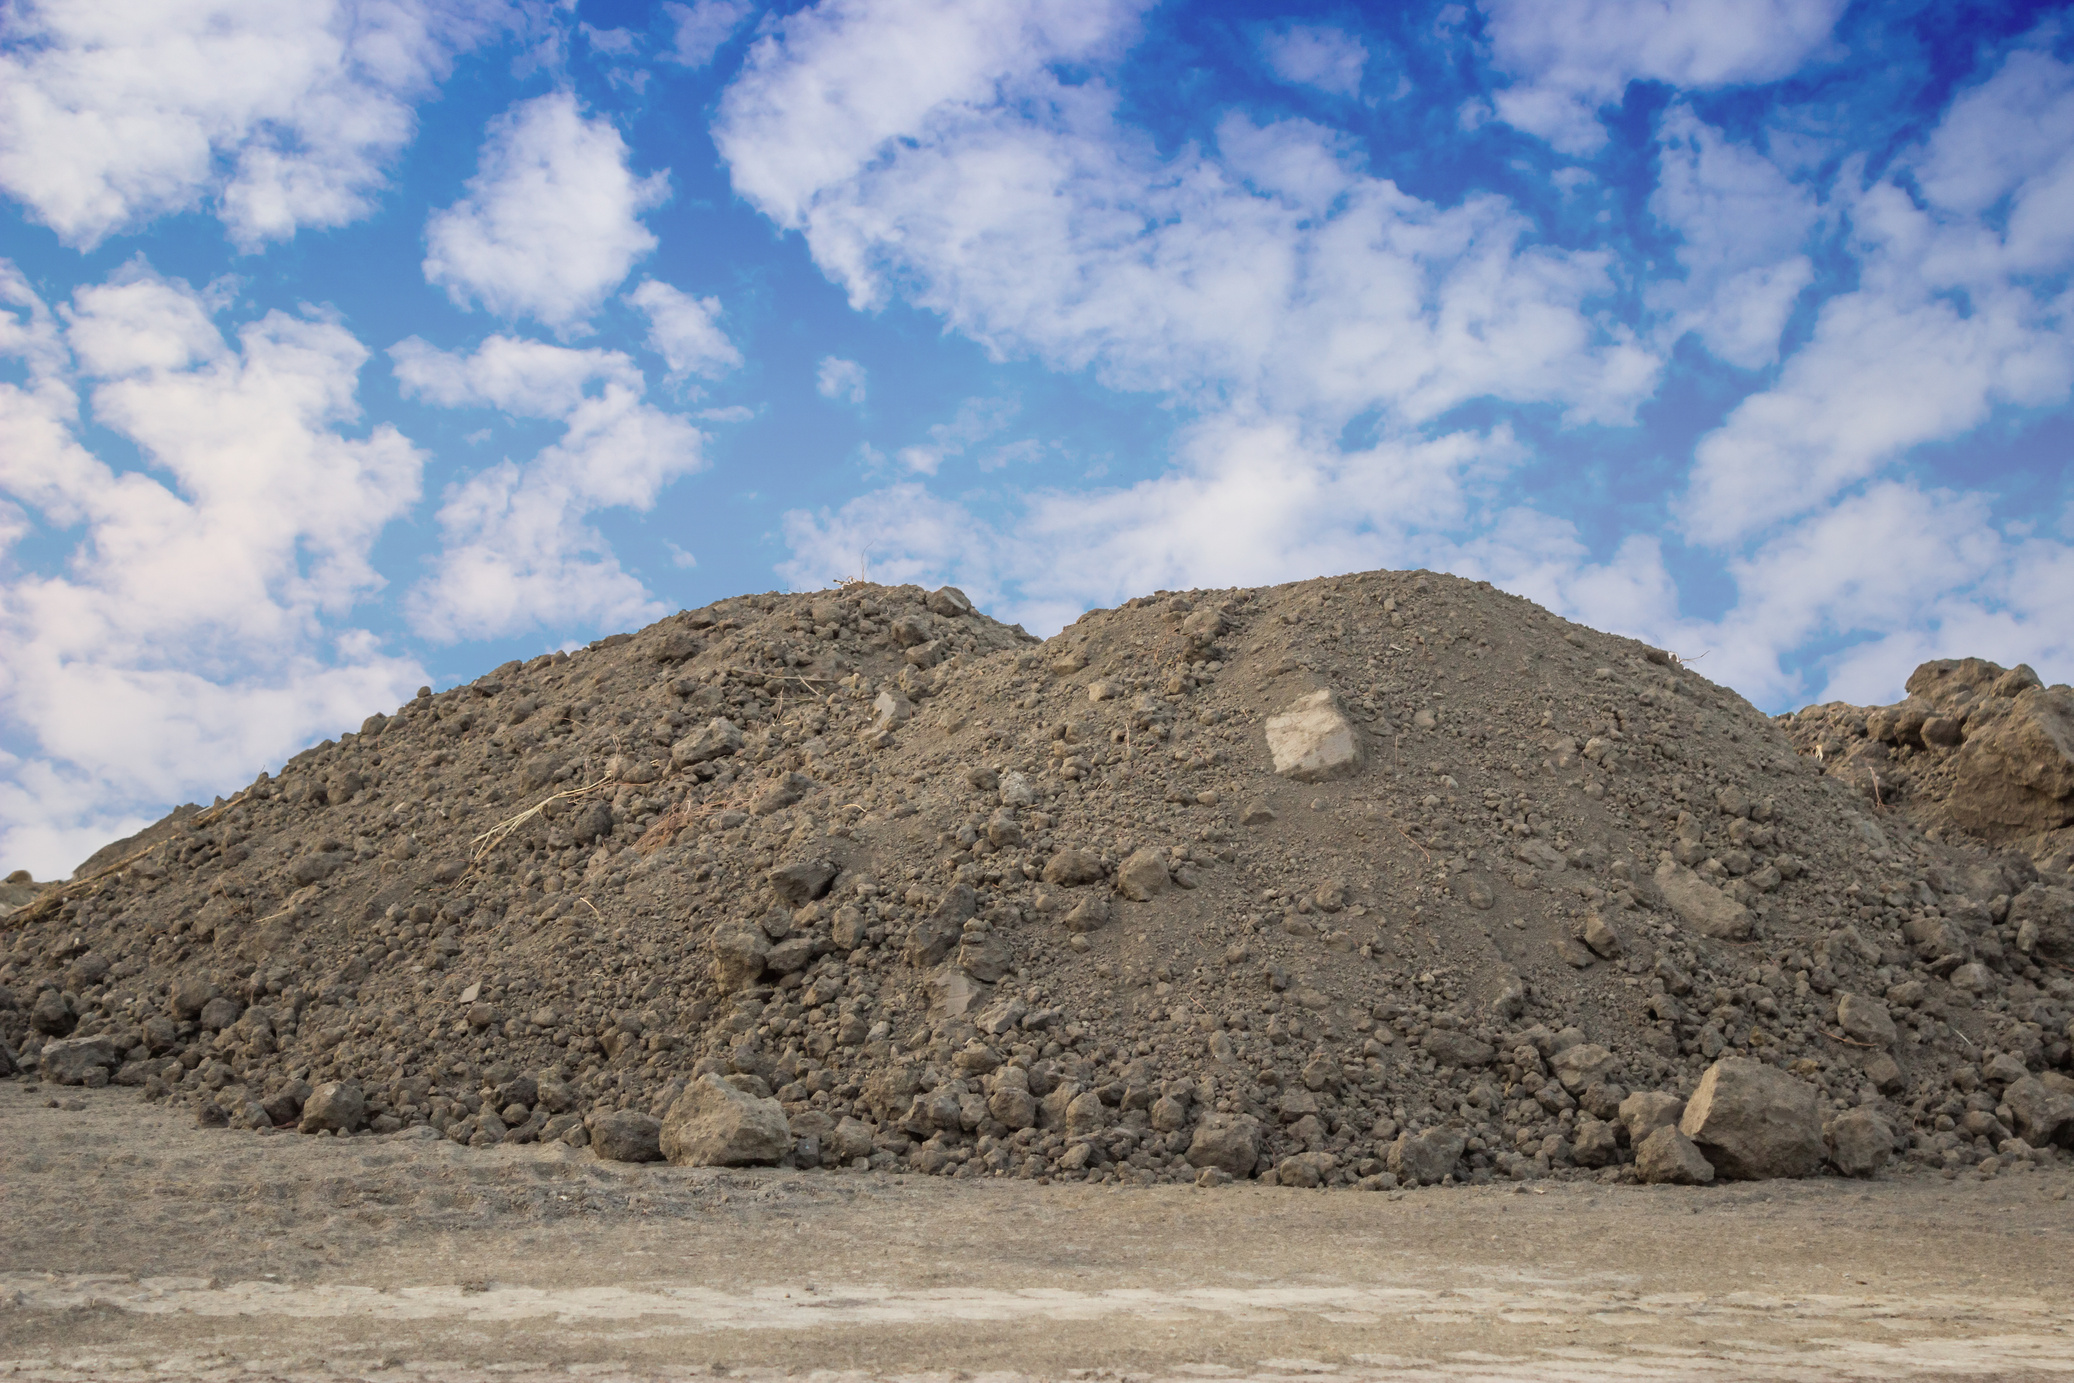 Piles of Dirt